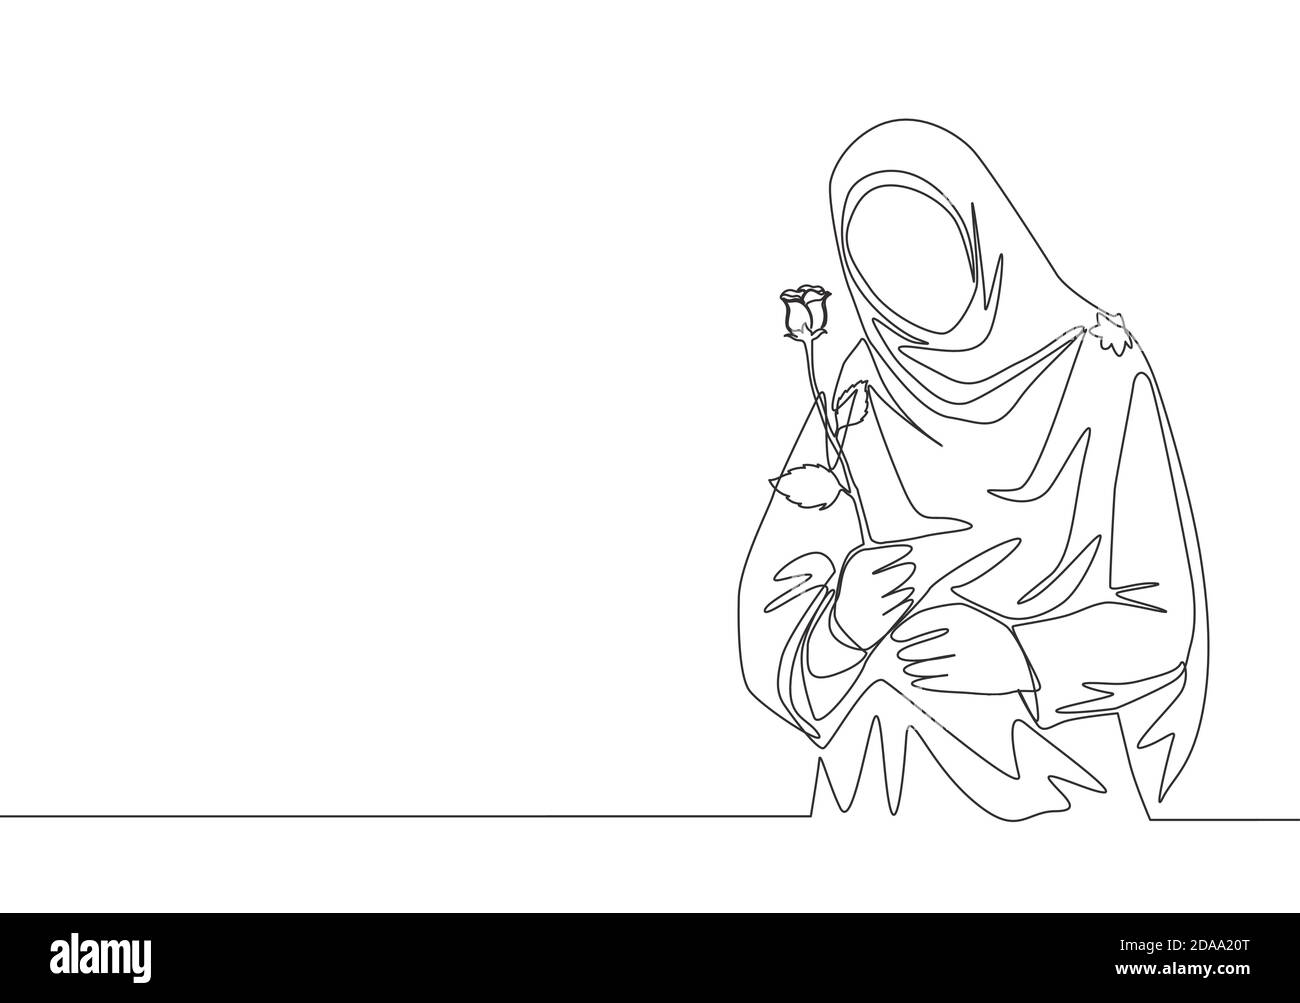 Einzelne kontinuierliche Linie Zeichnung von jungen glücklich niedlichen muslimah mit Kopftuch hält eine Blume Rose. Schönheit asiatische Frau Modell in trendy hijab Mode con Stock Vektor